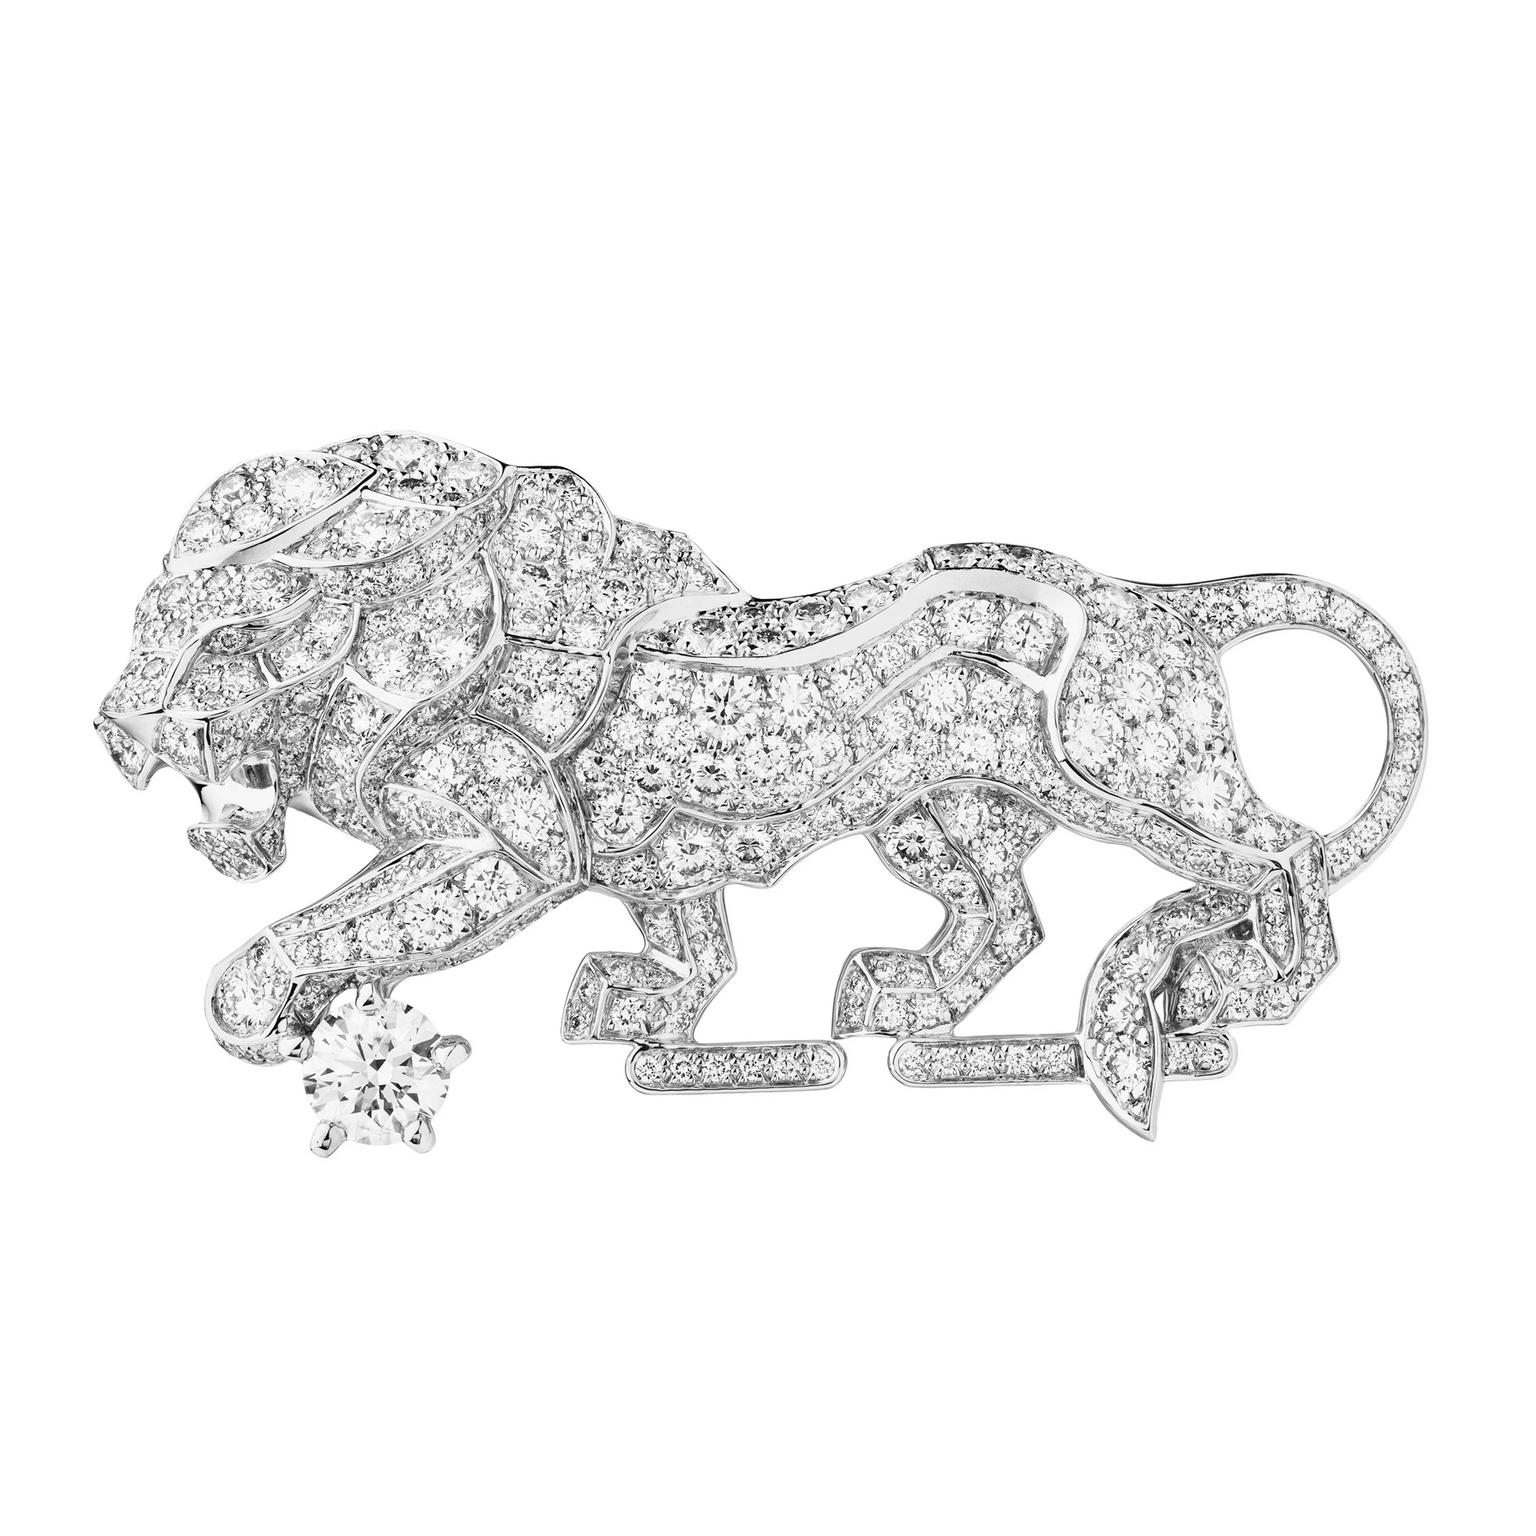 L'Esprit du Lion Timeless brooch, Chanel